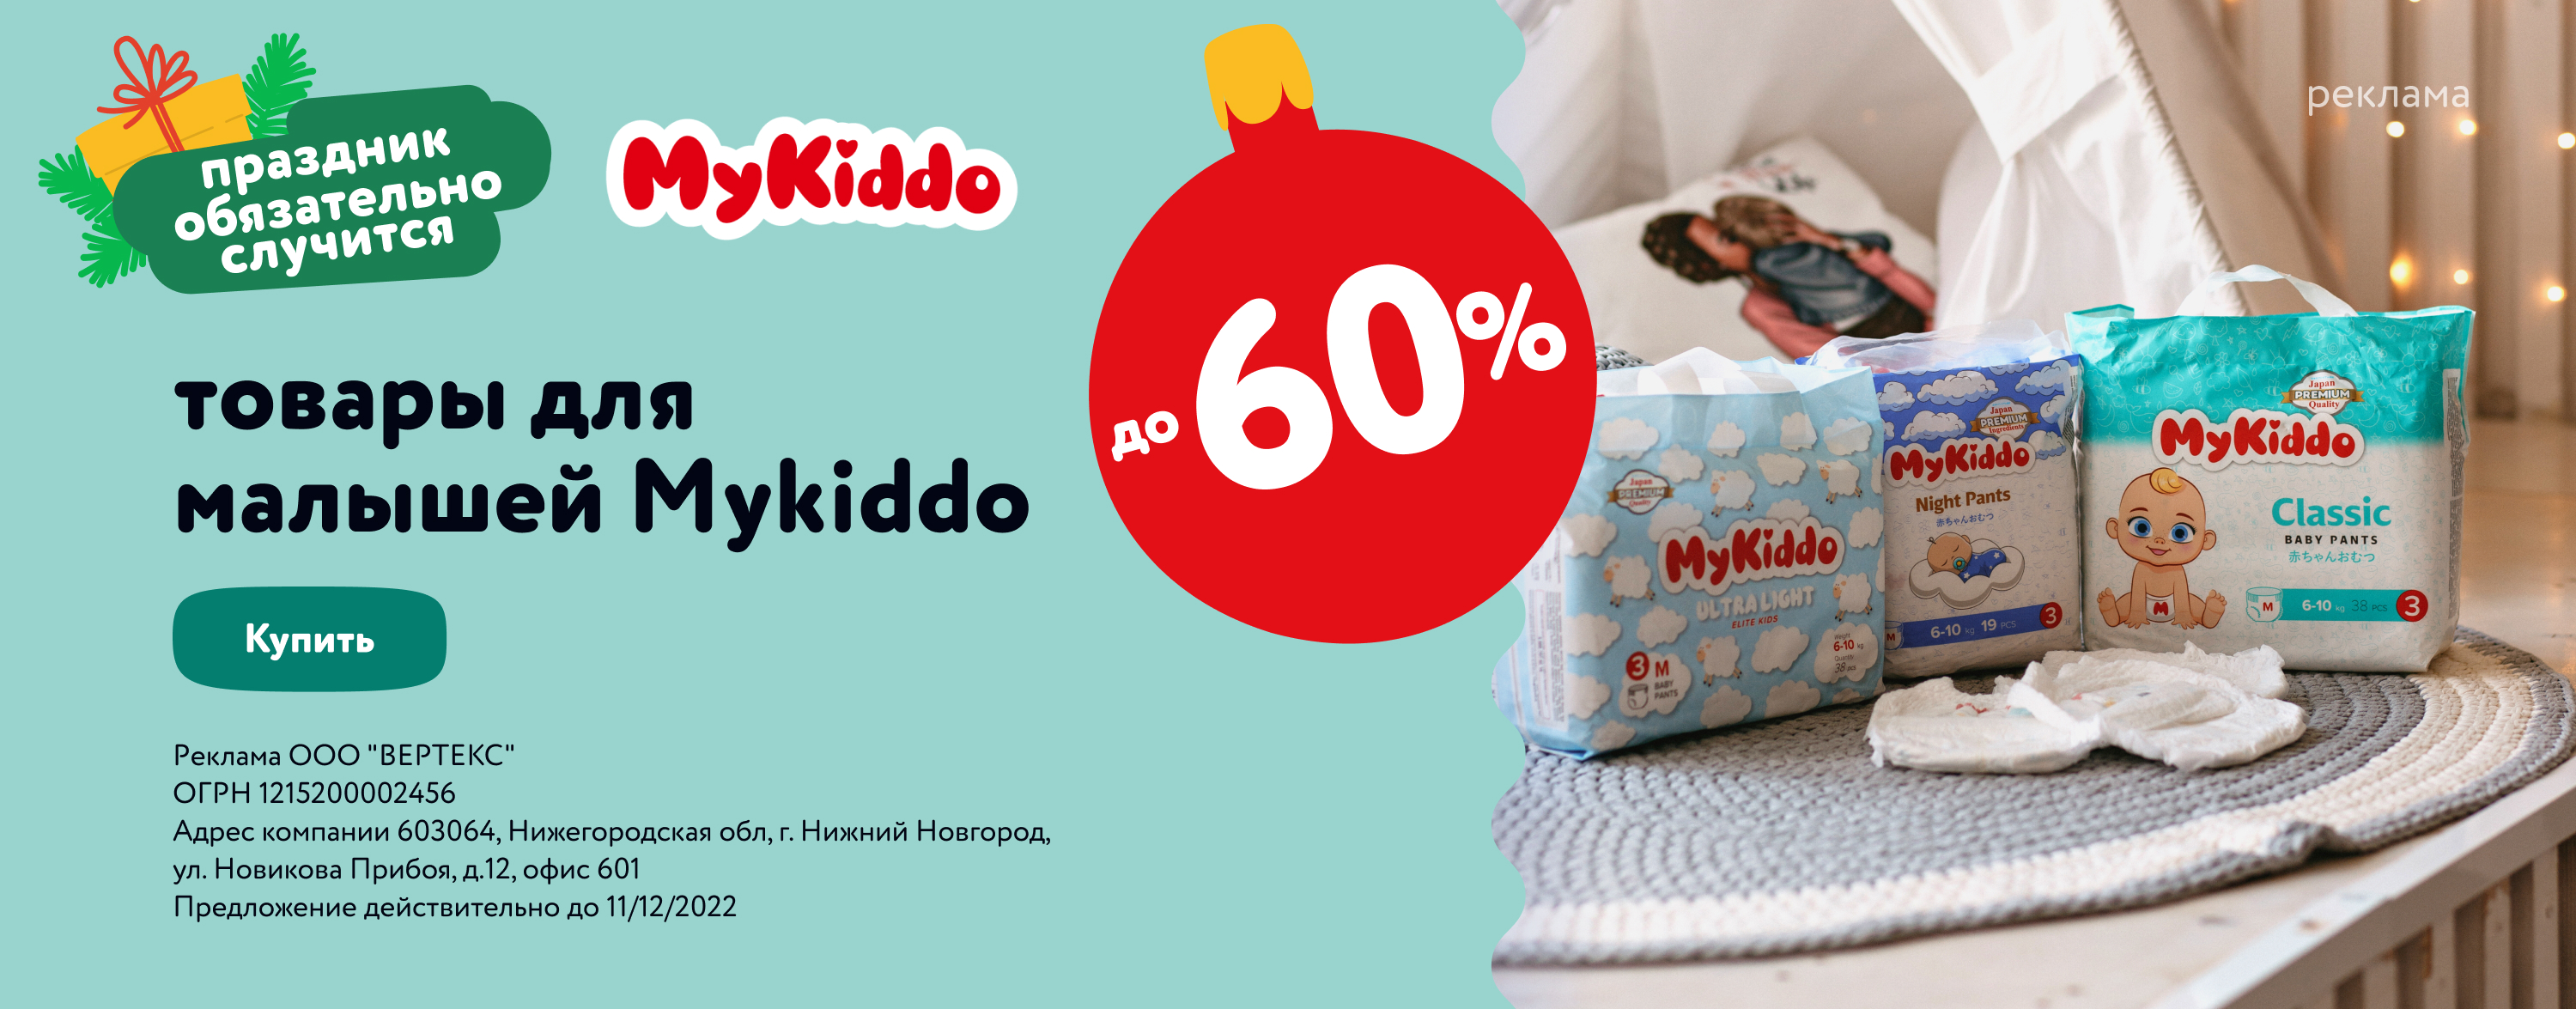 Скидки до 60% на товары бренда MyKiddo (категории)(